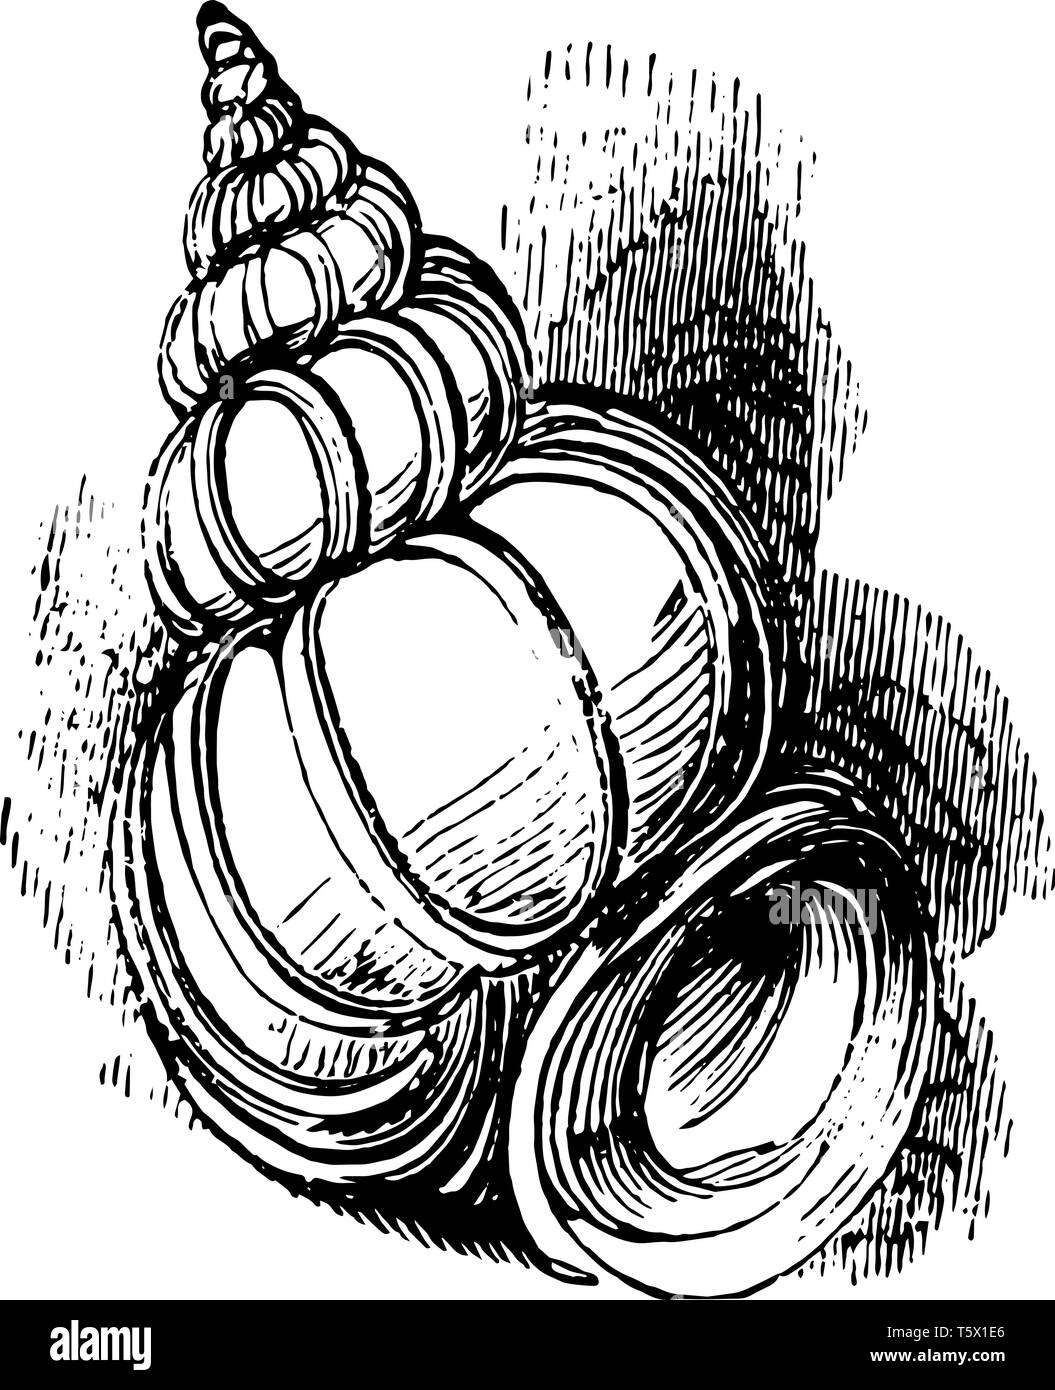 Wentletrap est un petit amphibien spirale blanc vintage dessin ou gravure illustration. Illustration de Vecteur